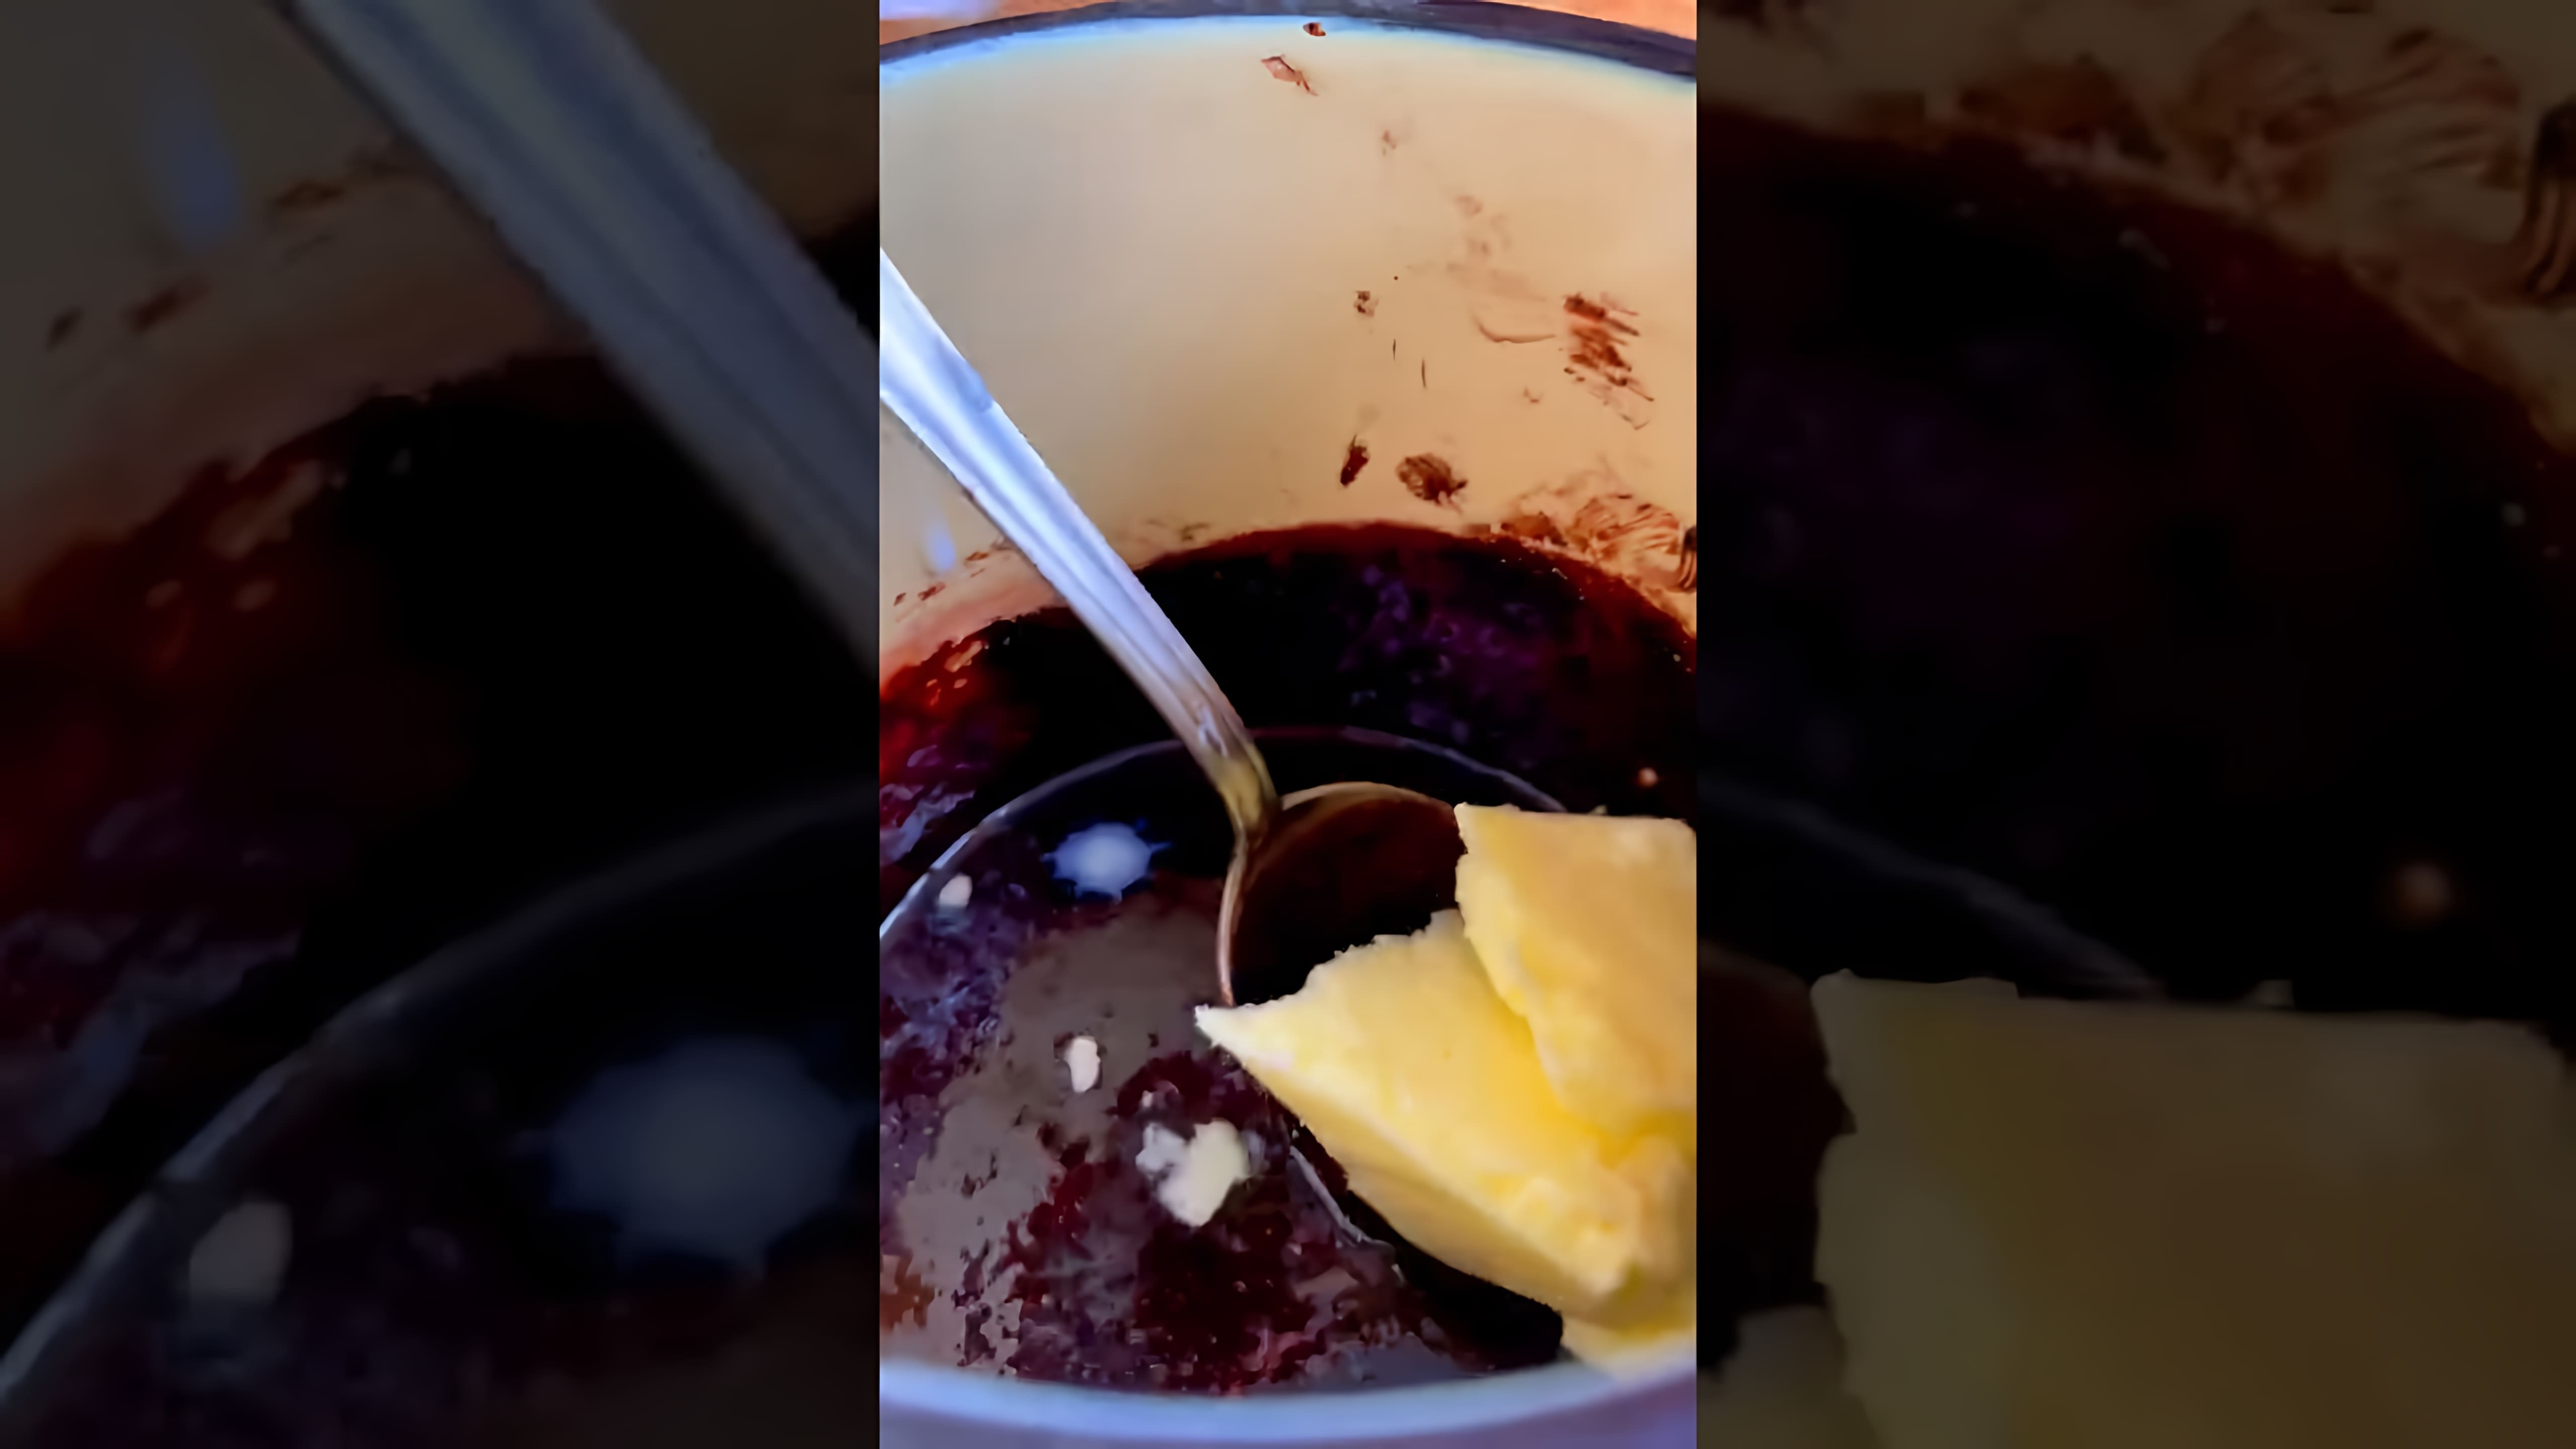 Видео рецепт приготовления шоколадной глазури или глазури из нескольких ингредиентов, когда в магазинах заканчиваются сладости